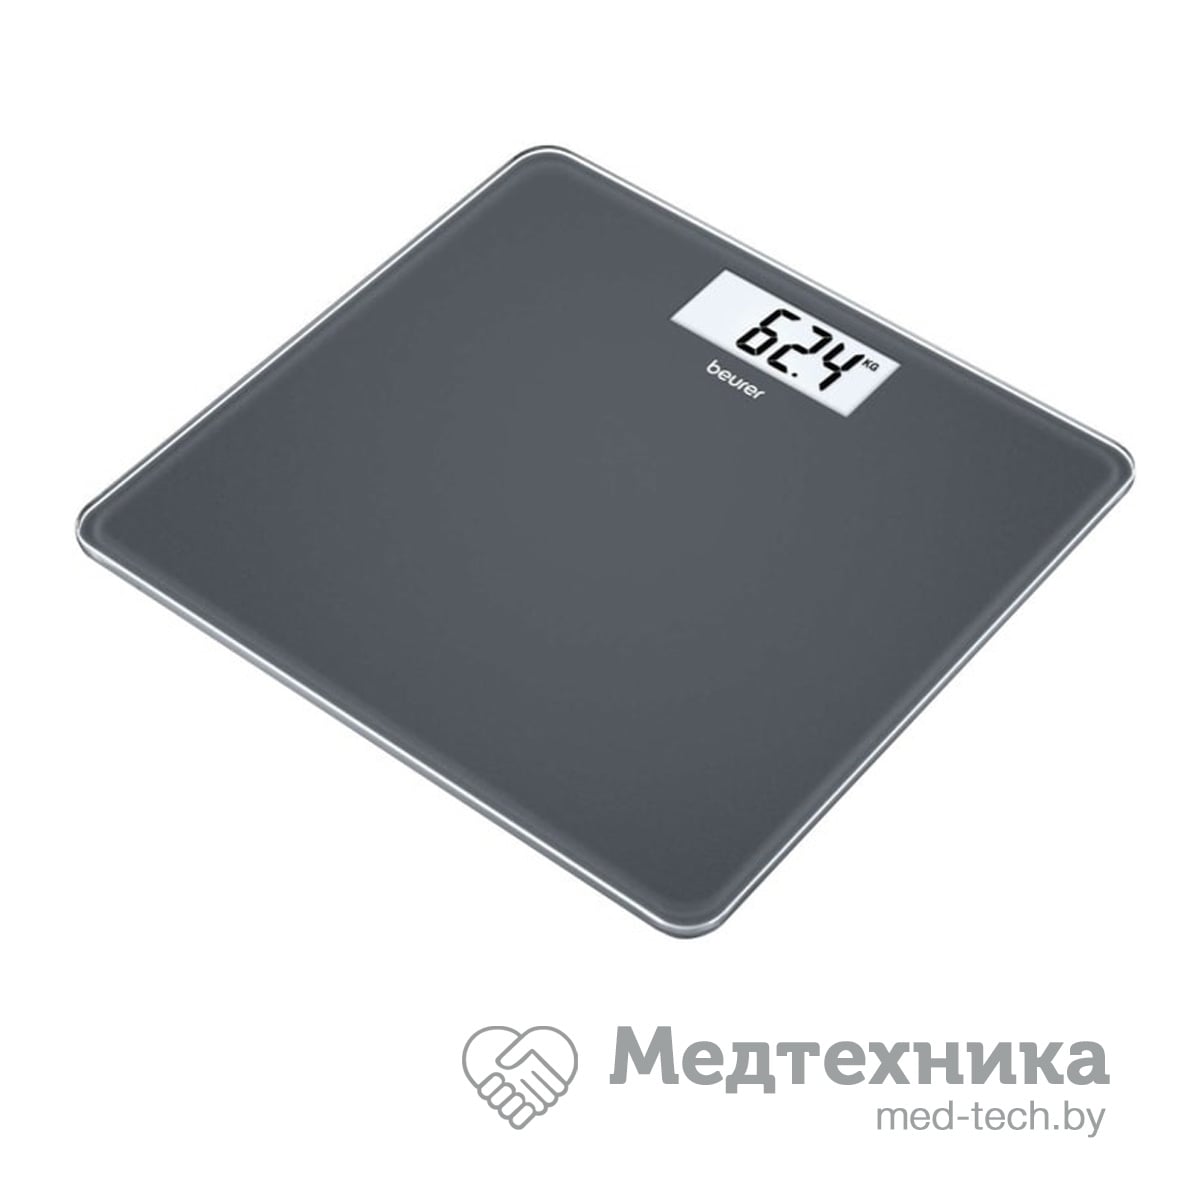 картинка Стеклянные весы Beurer GS 213 от РУП Медтехника